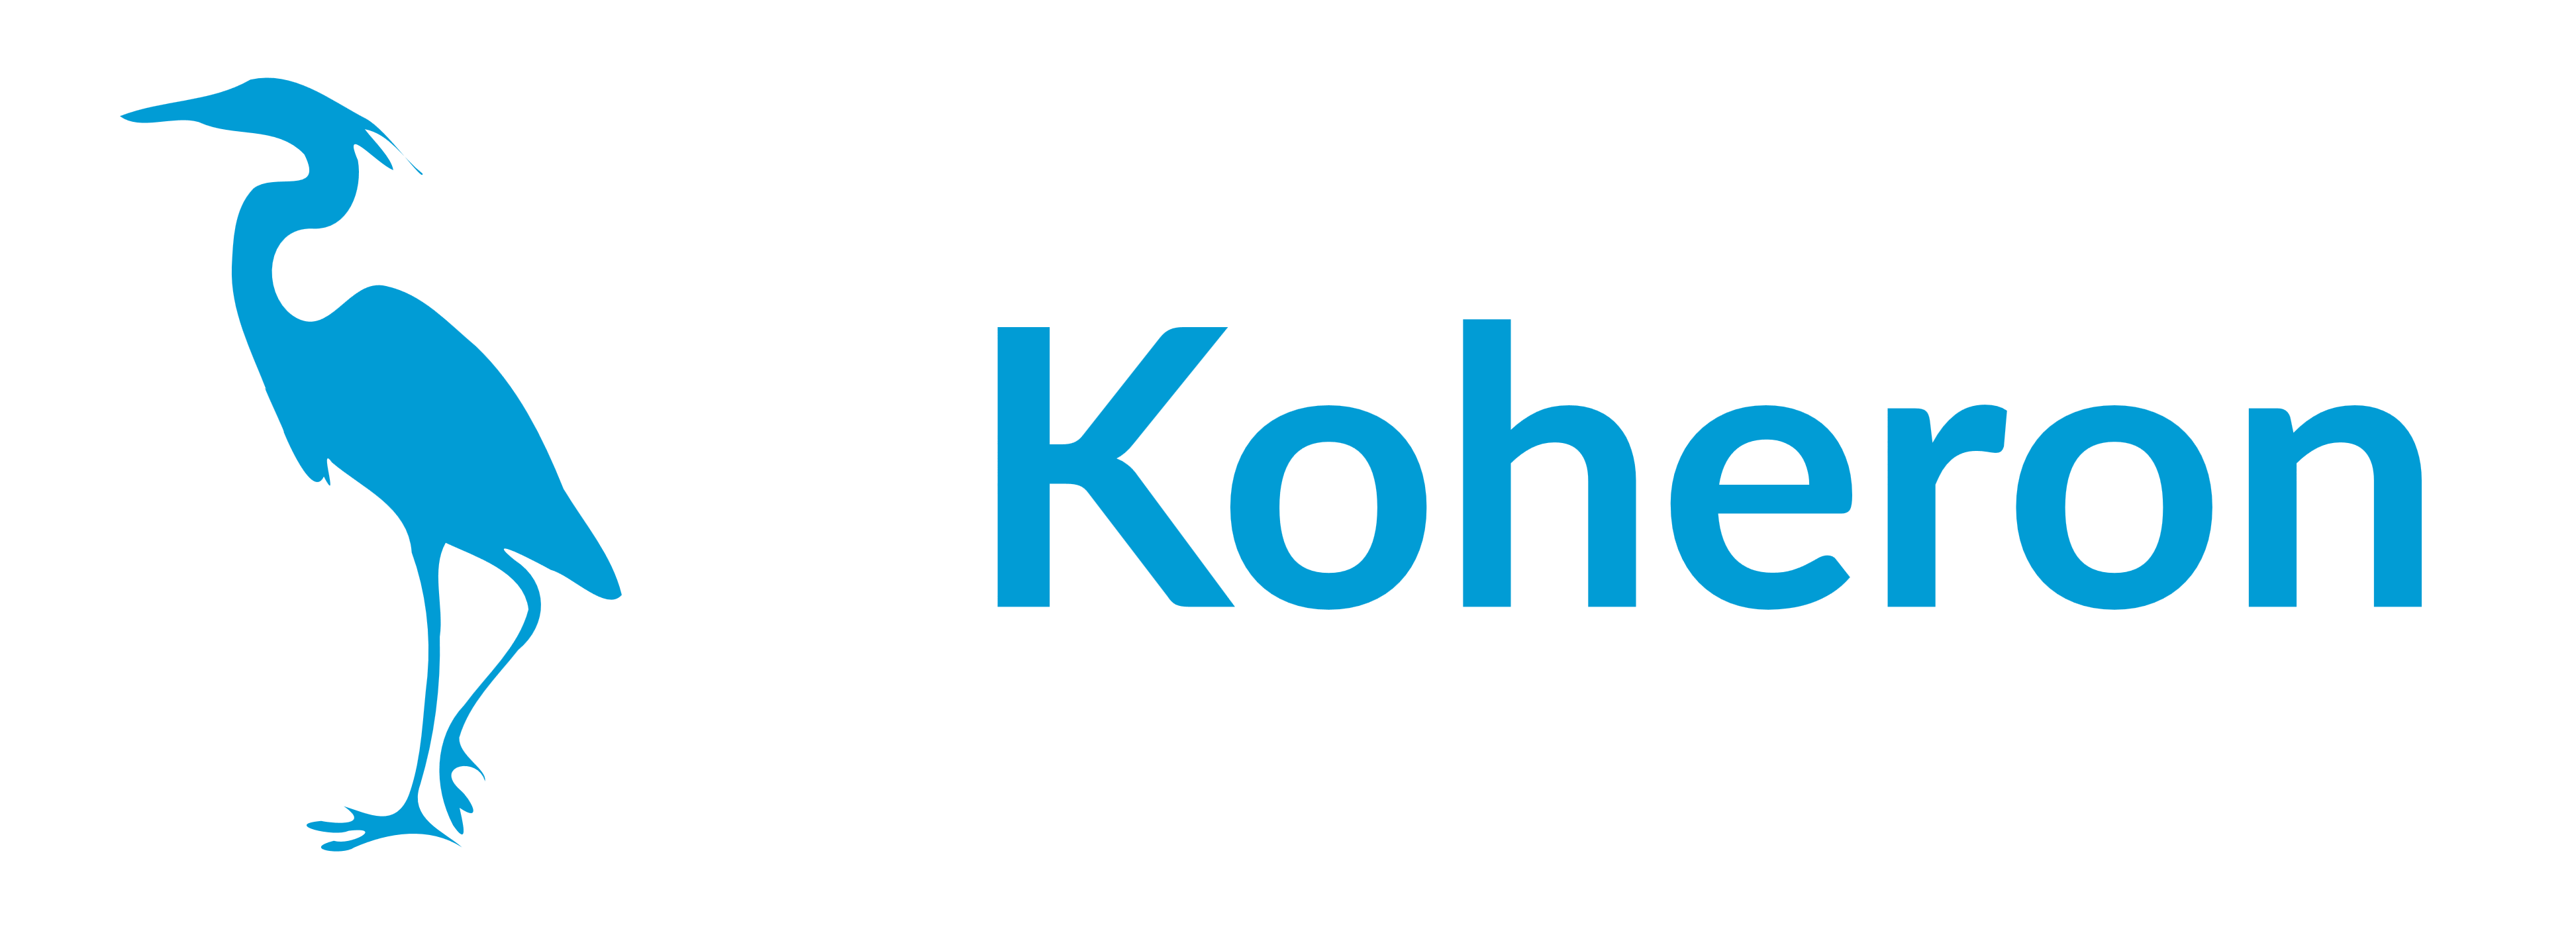 Koheron logo, logotype